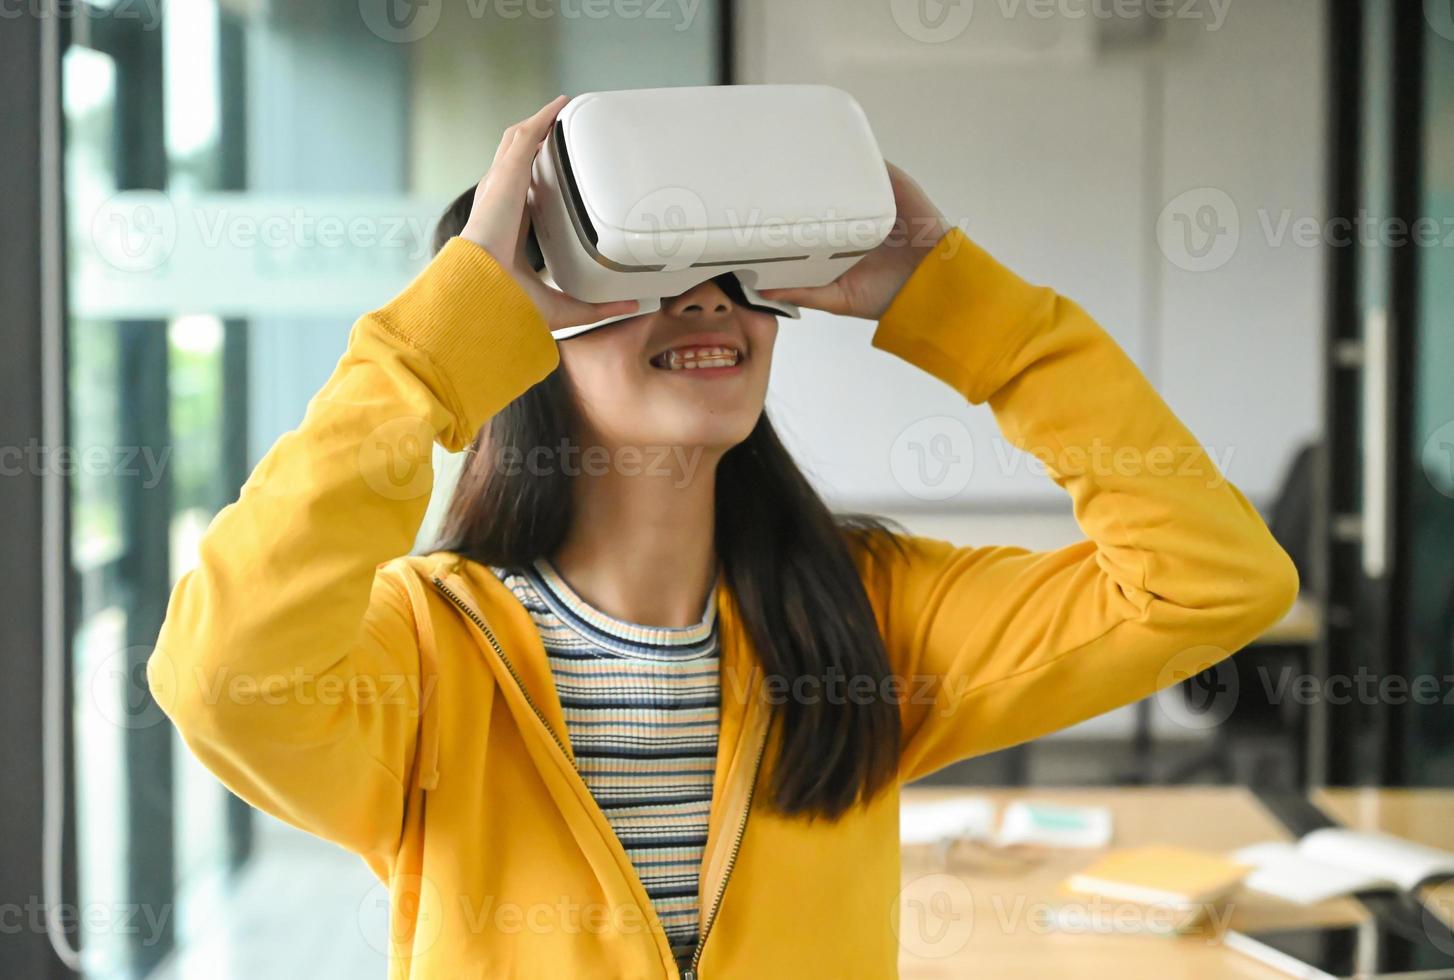 aziatisch meisje dat een geel shirt draagt, gebruikt de vr-headset. zij lacht. foto